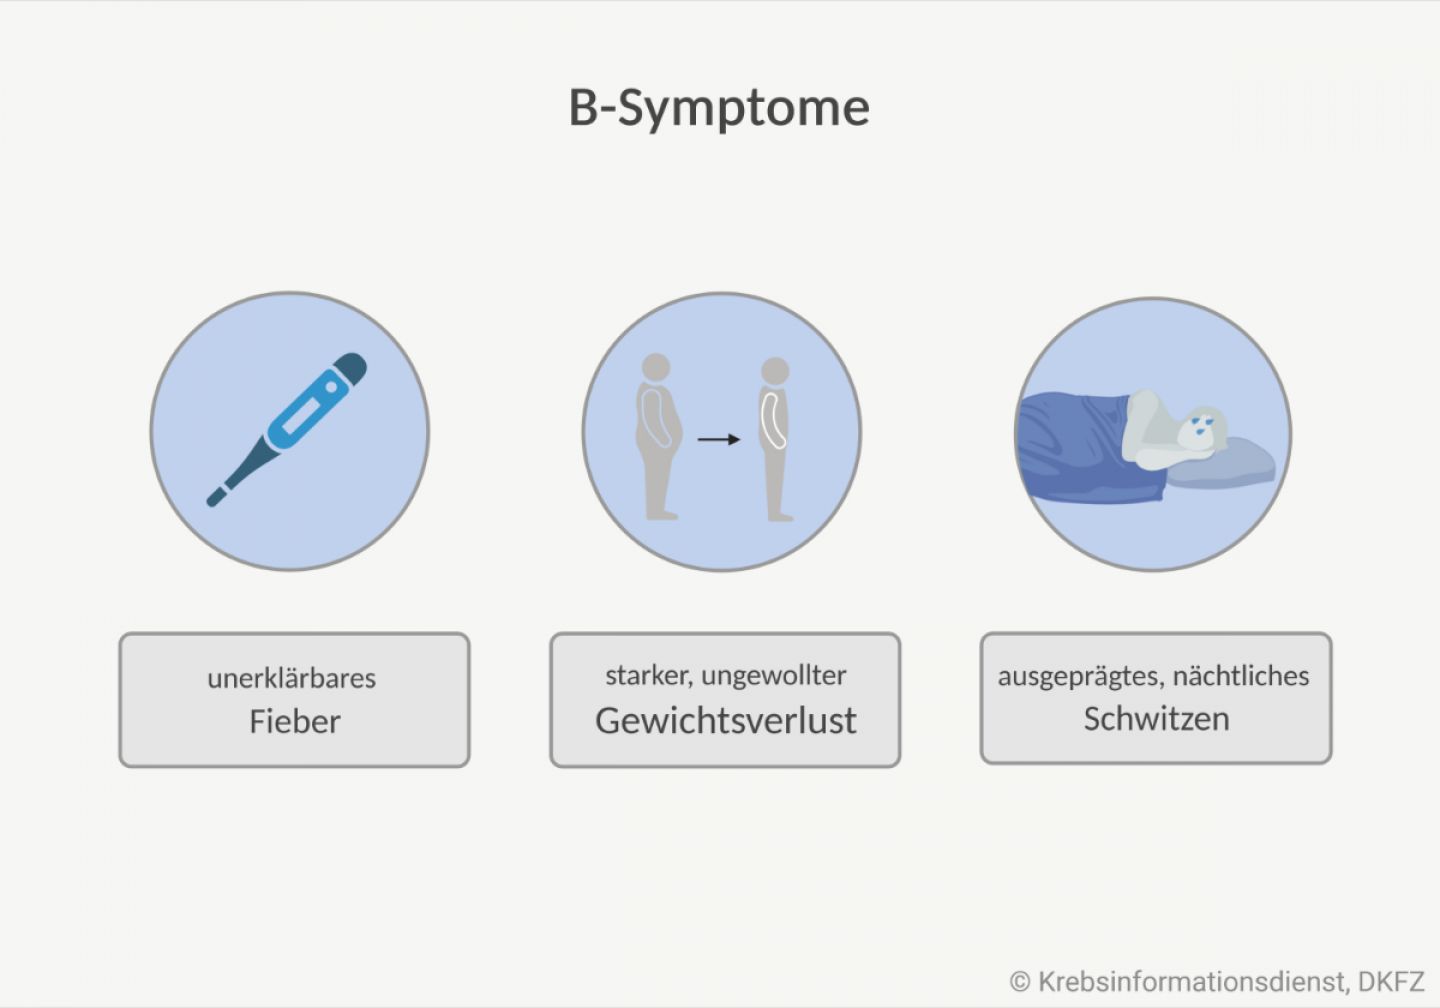 Zu B-Symptomen zählt unerklärbares Fieber, starker, ungewollter Gewichtsverlust und ausgeprägtes nächtliches Schwitzen